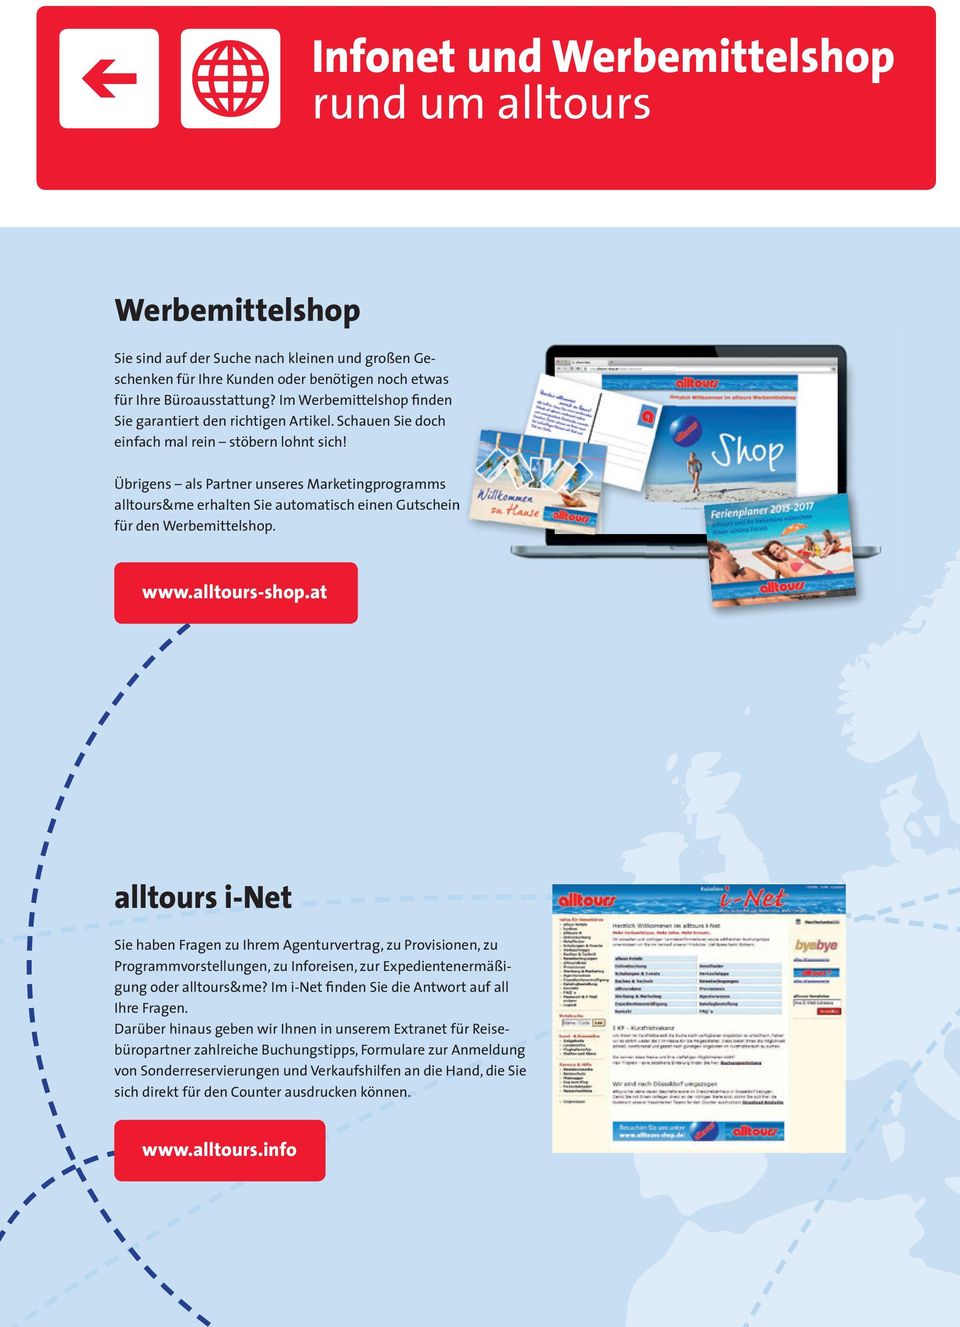 Übrigens als Partner unseres Marketingprogramms alltours&me erhalten Sie automatisch einen Gutschein für den Werbemittelshop. www.alltours-shop.